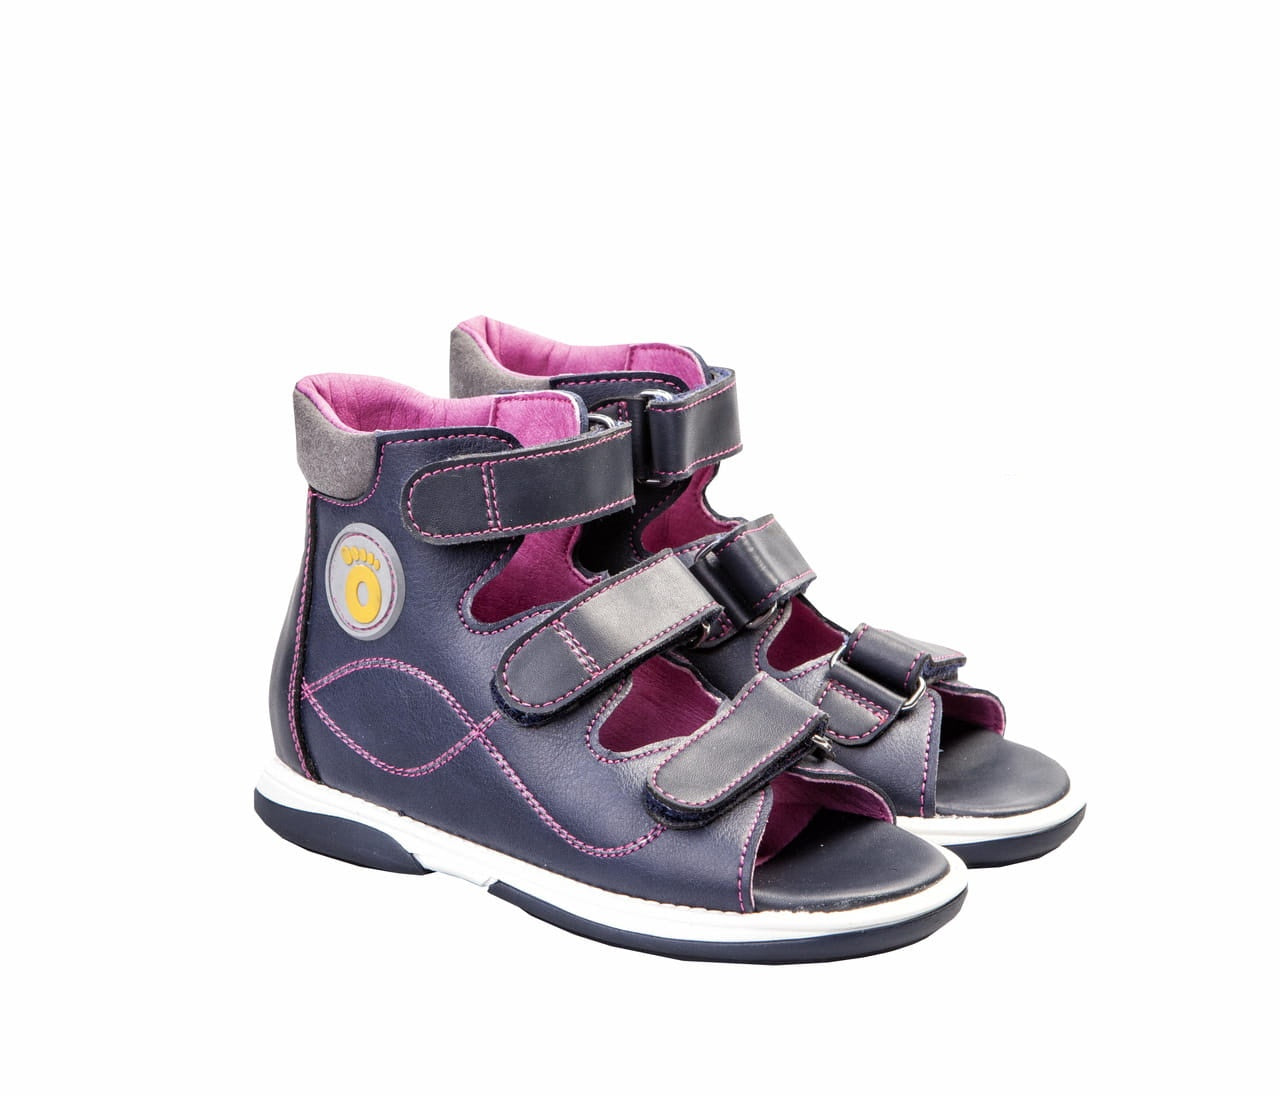 Memo - BETTI 5DA children's orthosis sandals